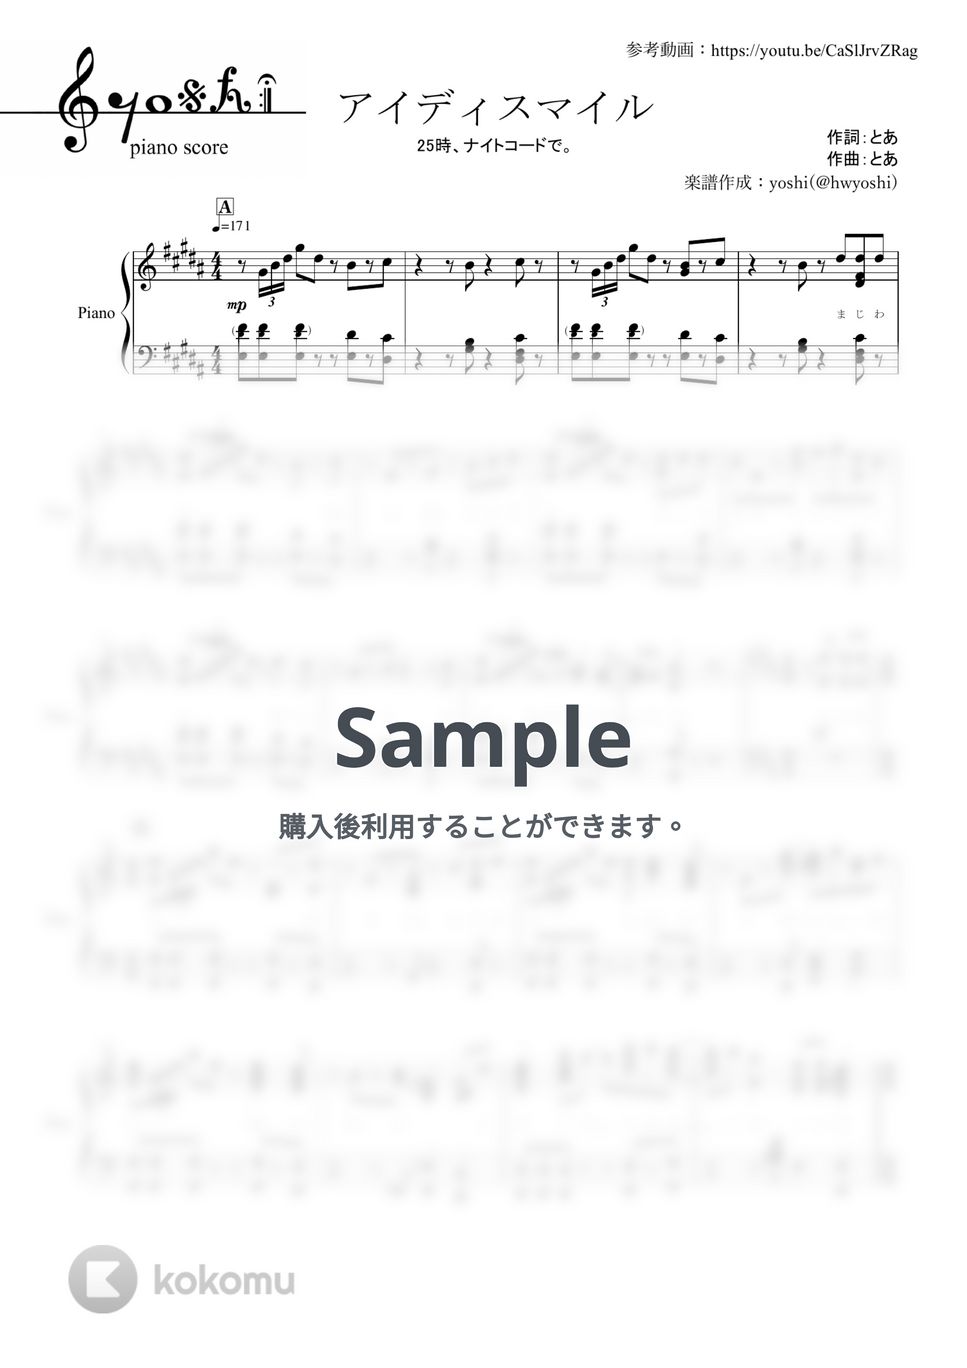 25時、ナイトコードで。 - アイディスマイル (ピアノ楽譜 / プロジェクトセカイ カラフルステージ! / 全９ページ / とあ) by yoshi